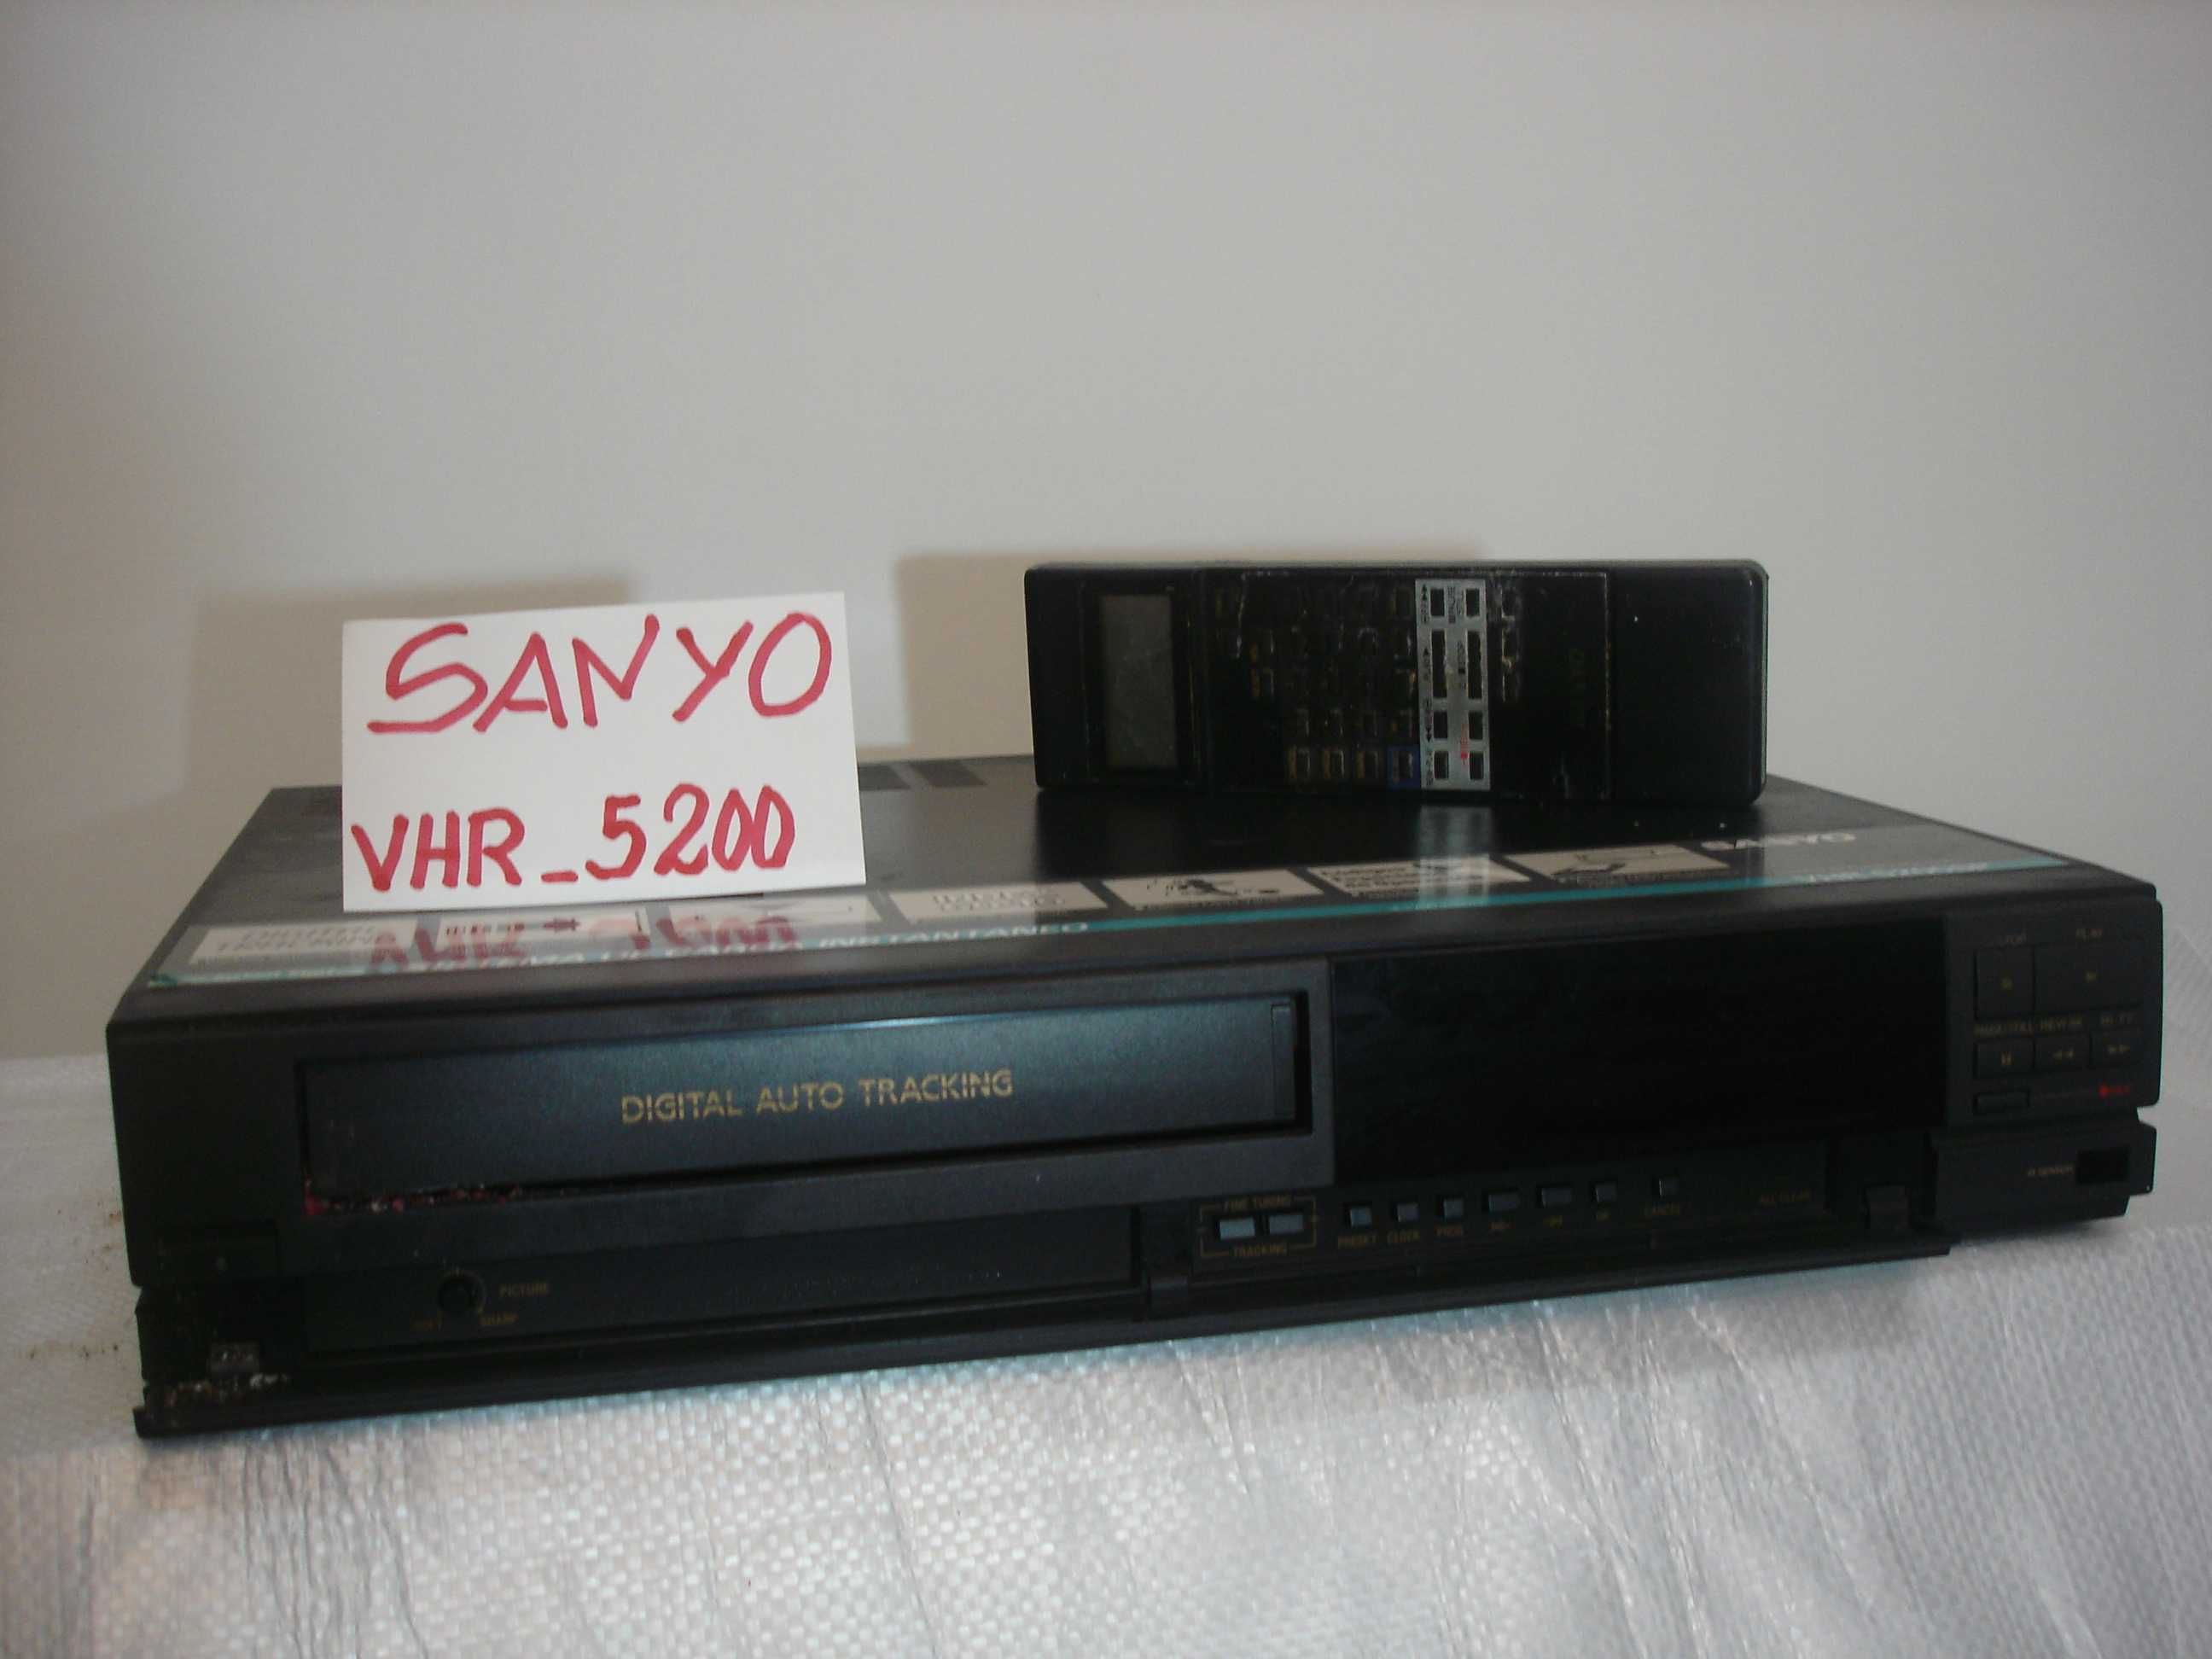 Video sanyo VHR-5200, VHR-8100